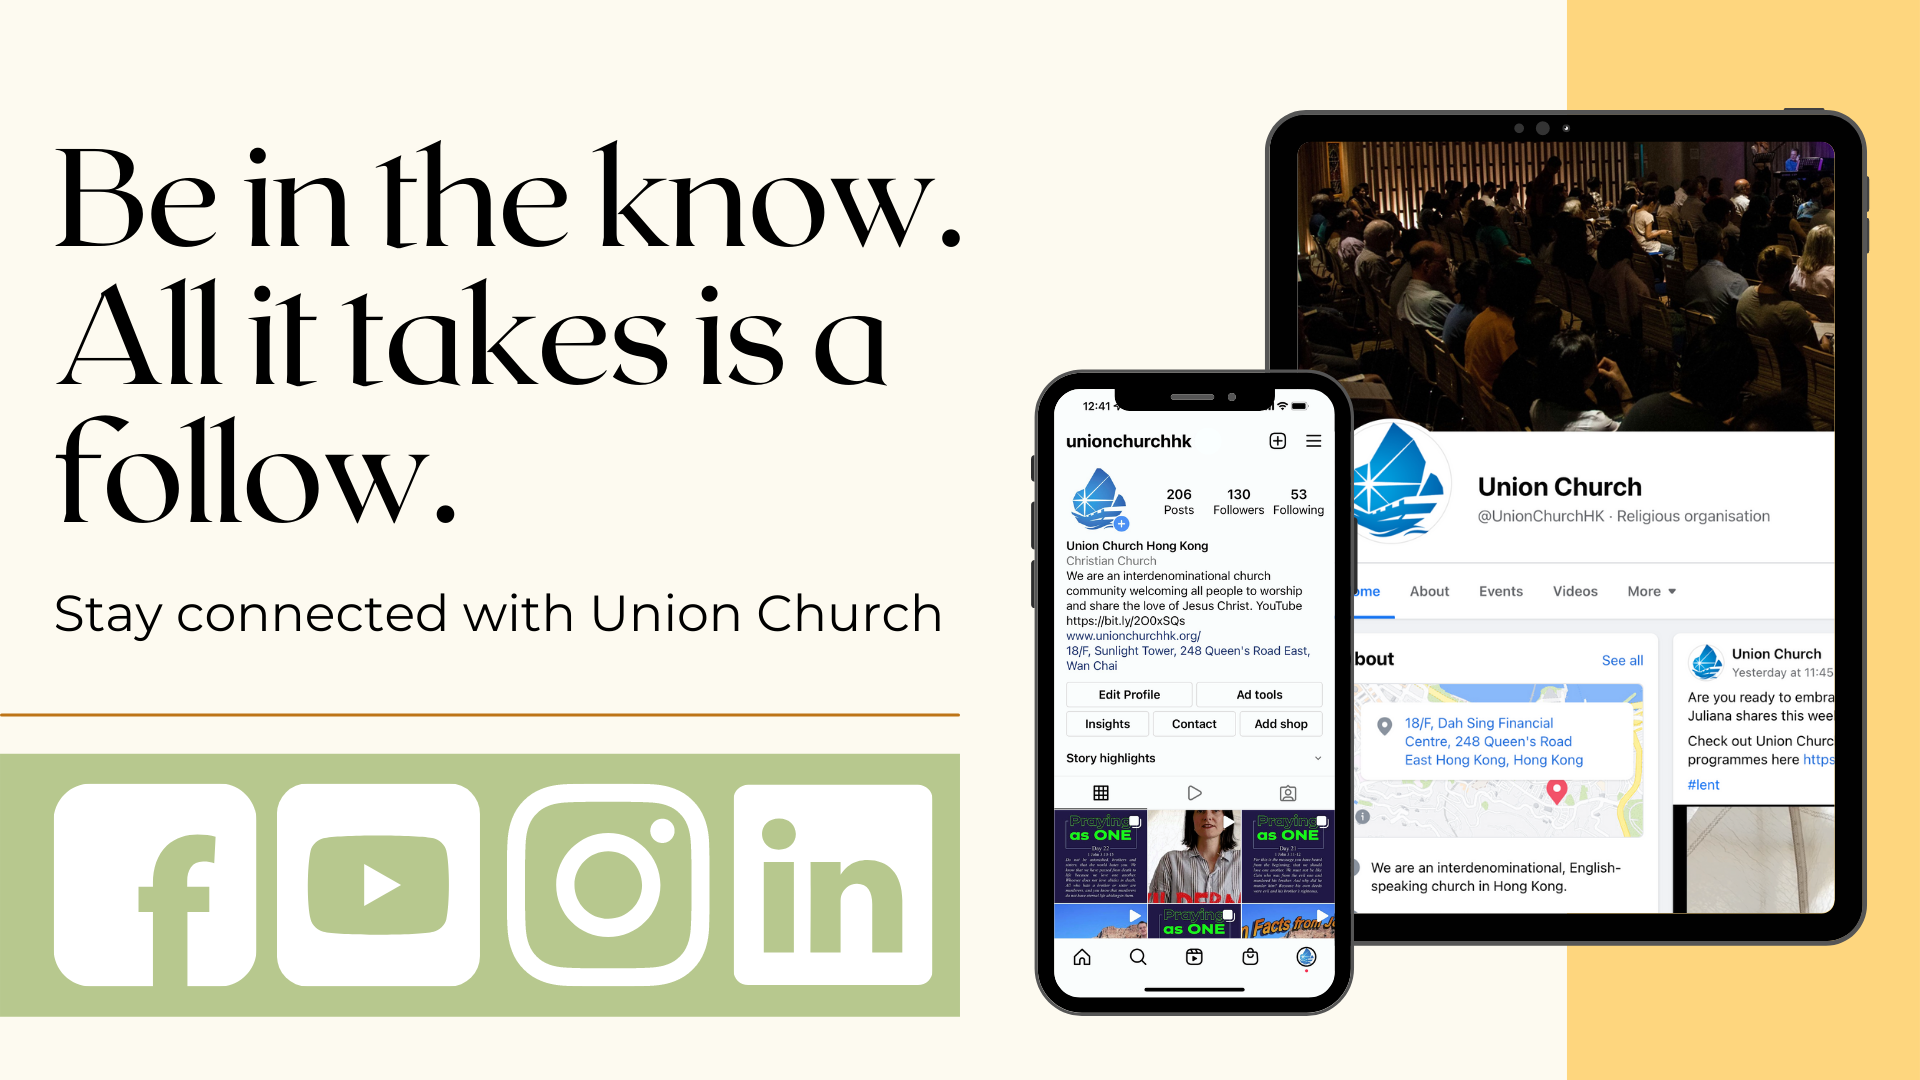 Follow Union church on social media